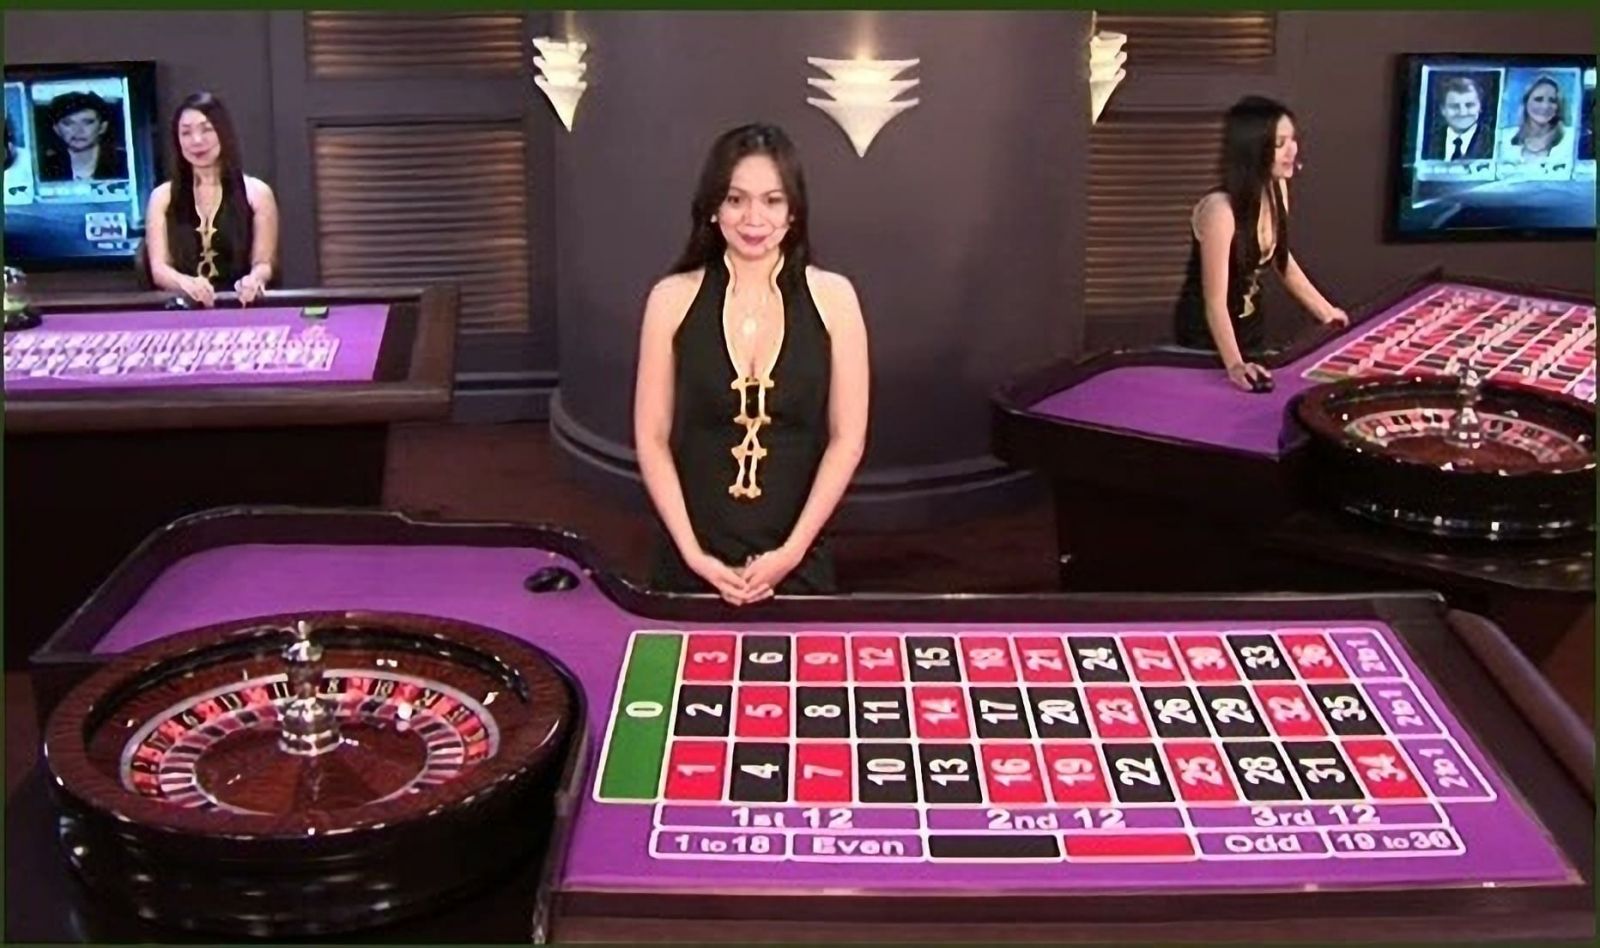 輪盤賭是一種流行的娛樂城遊戲